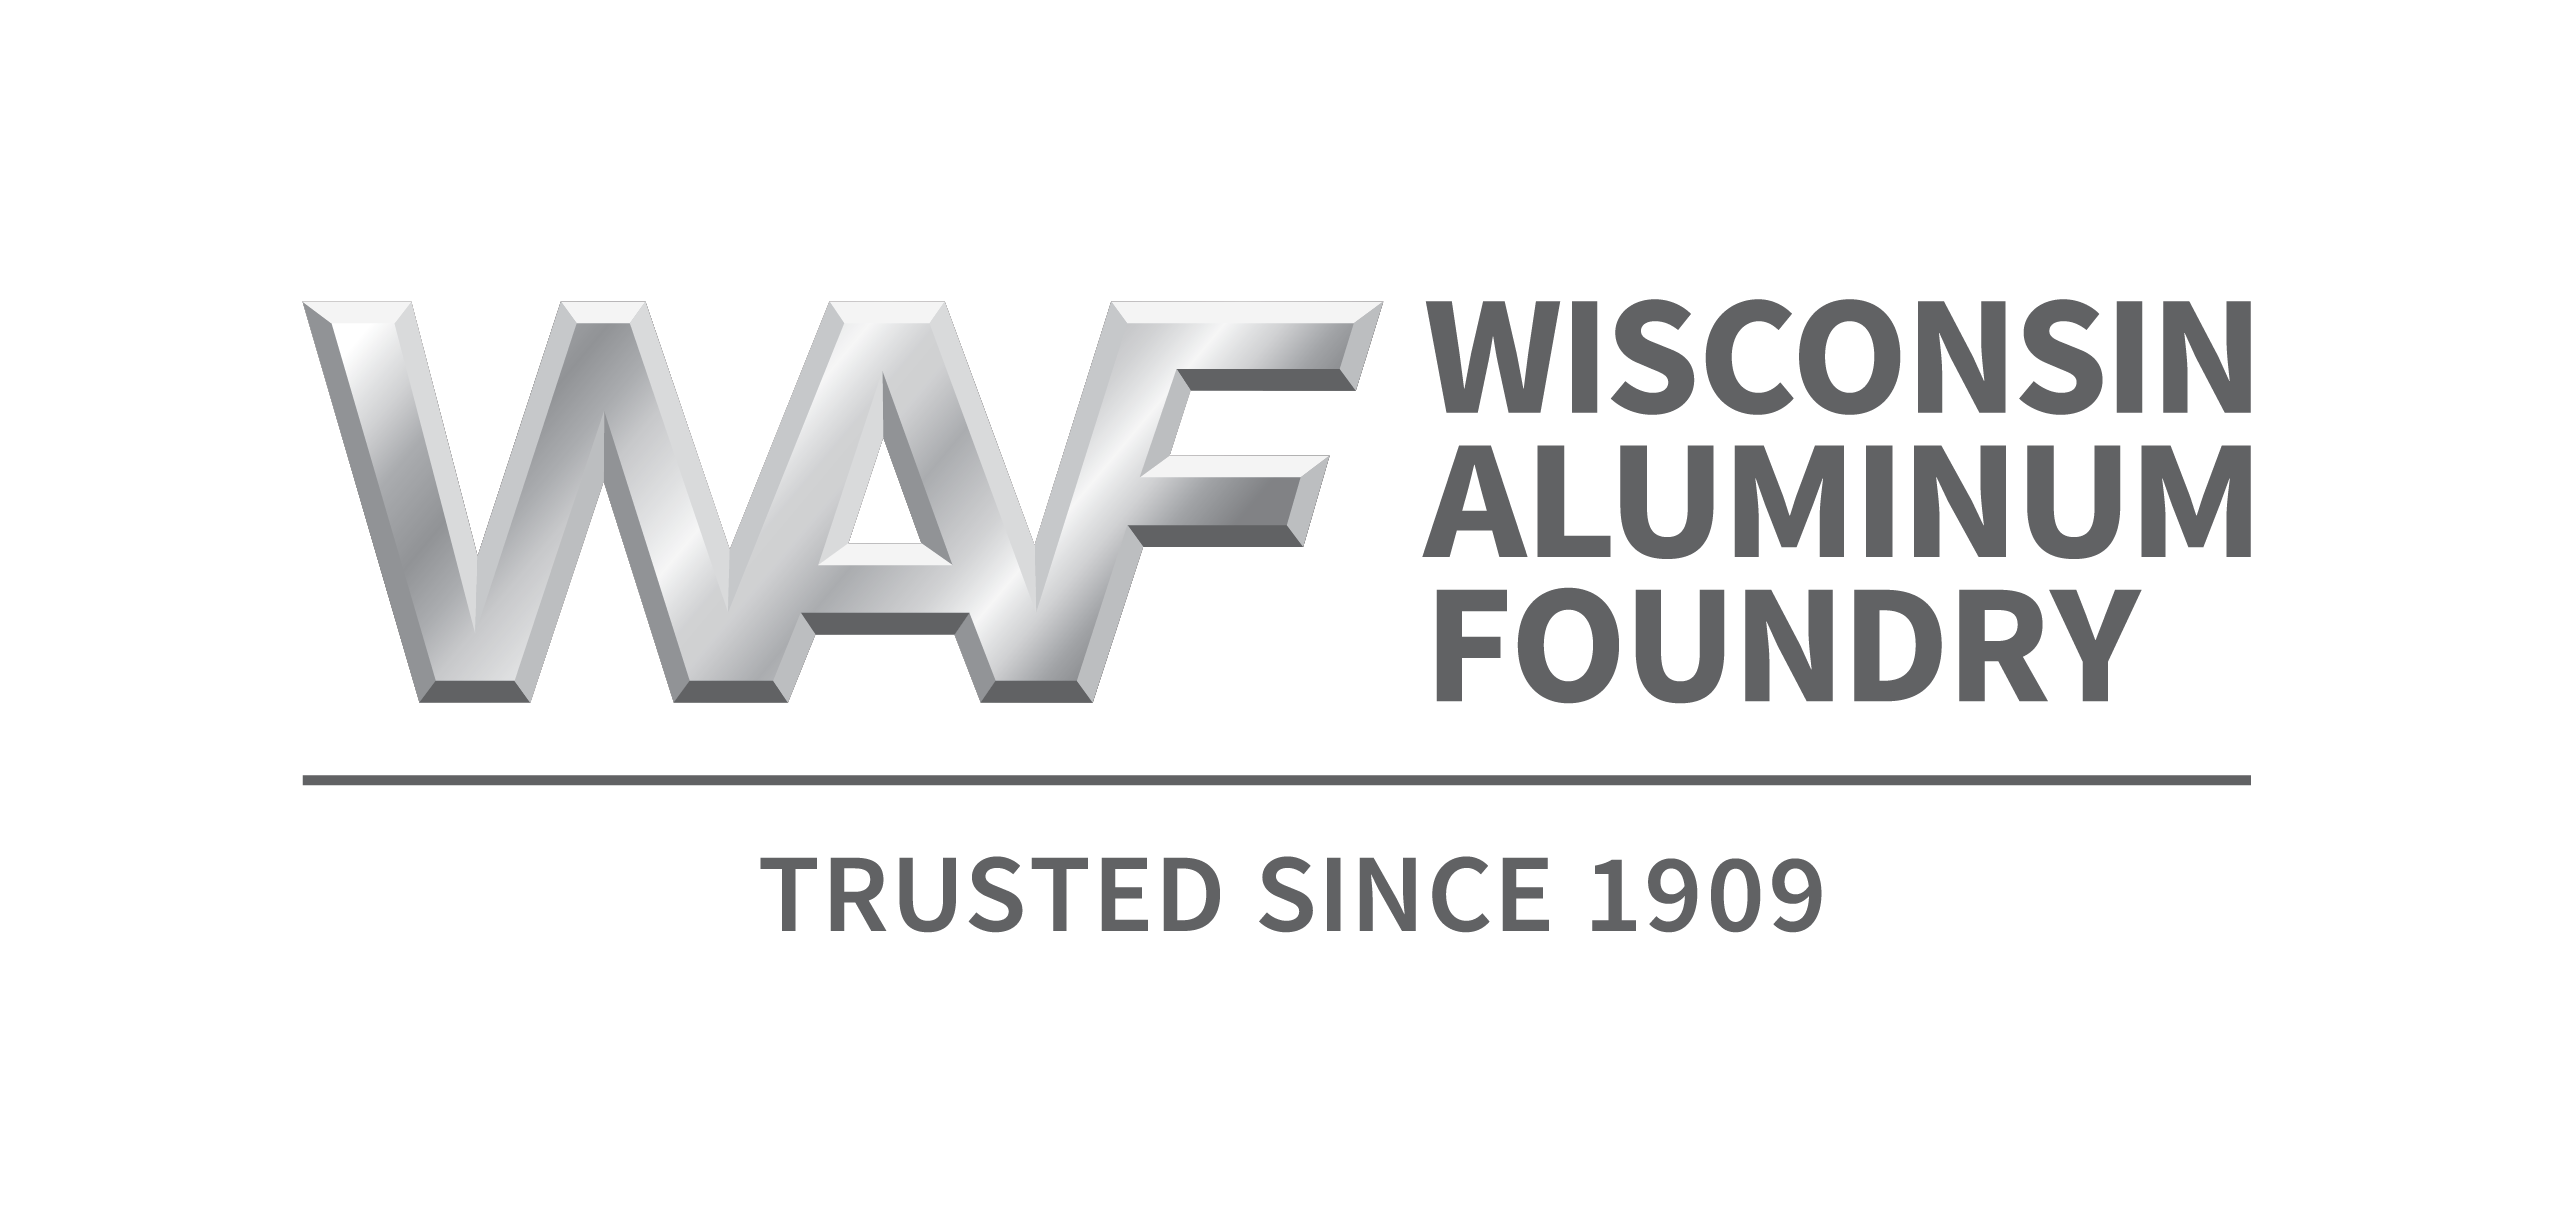 Wisconsin Aluminum Foundry logo